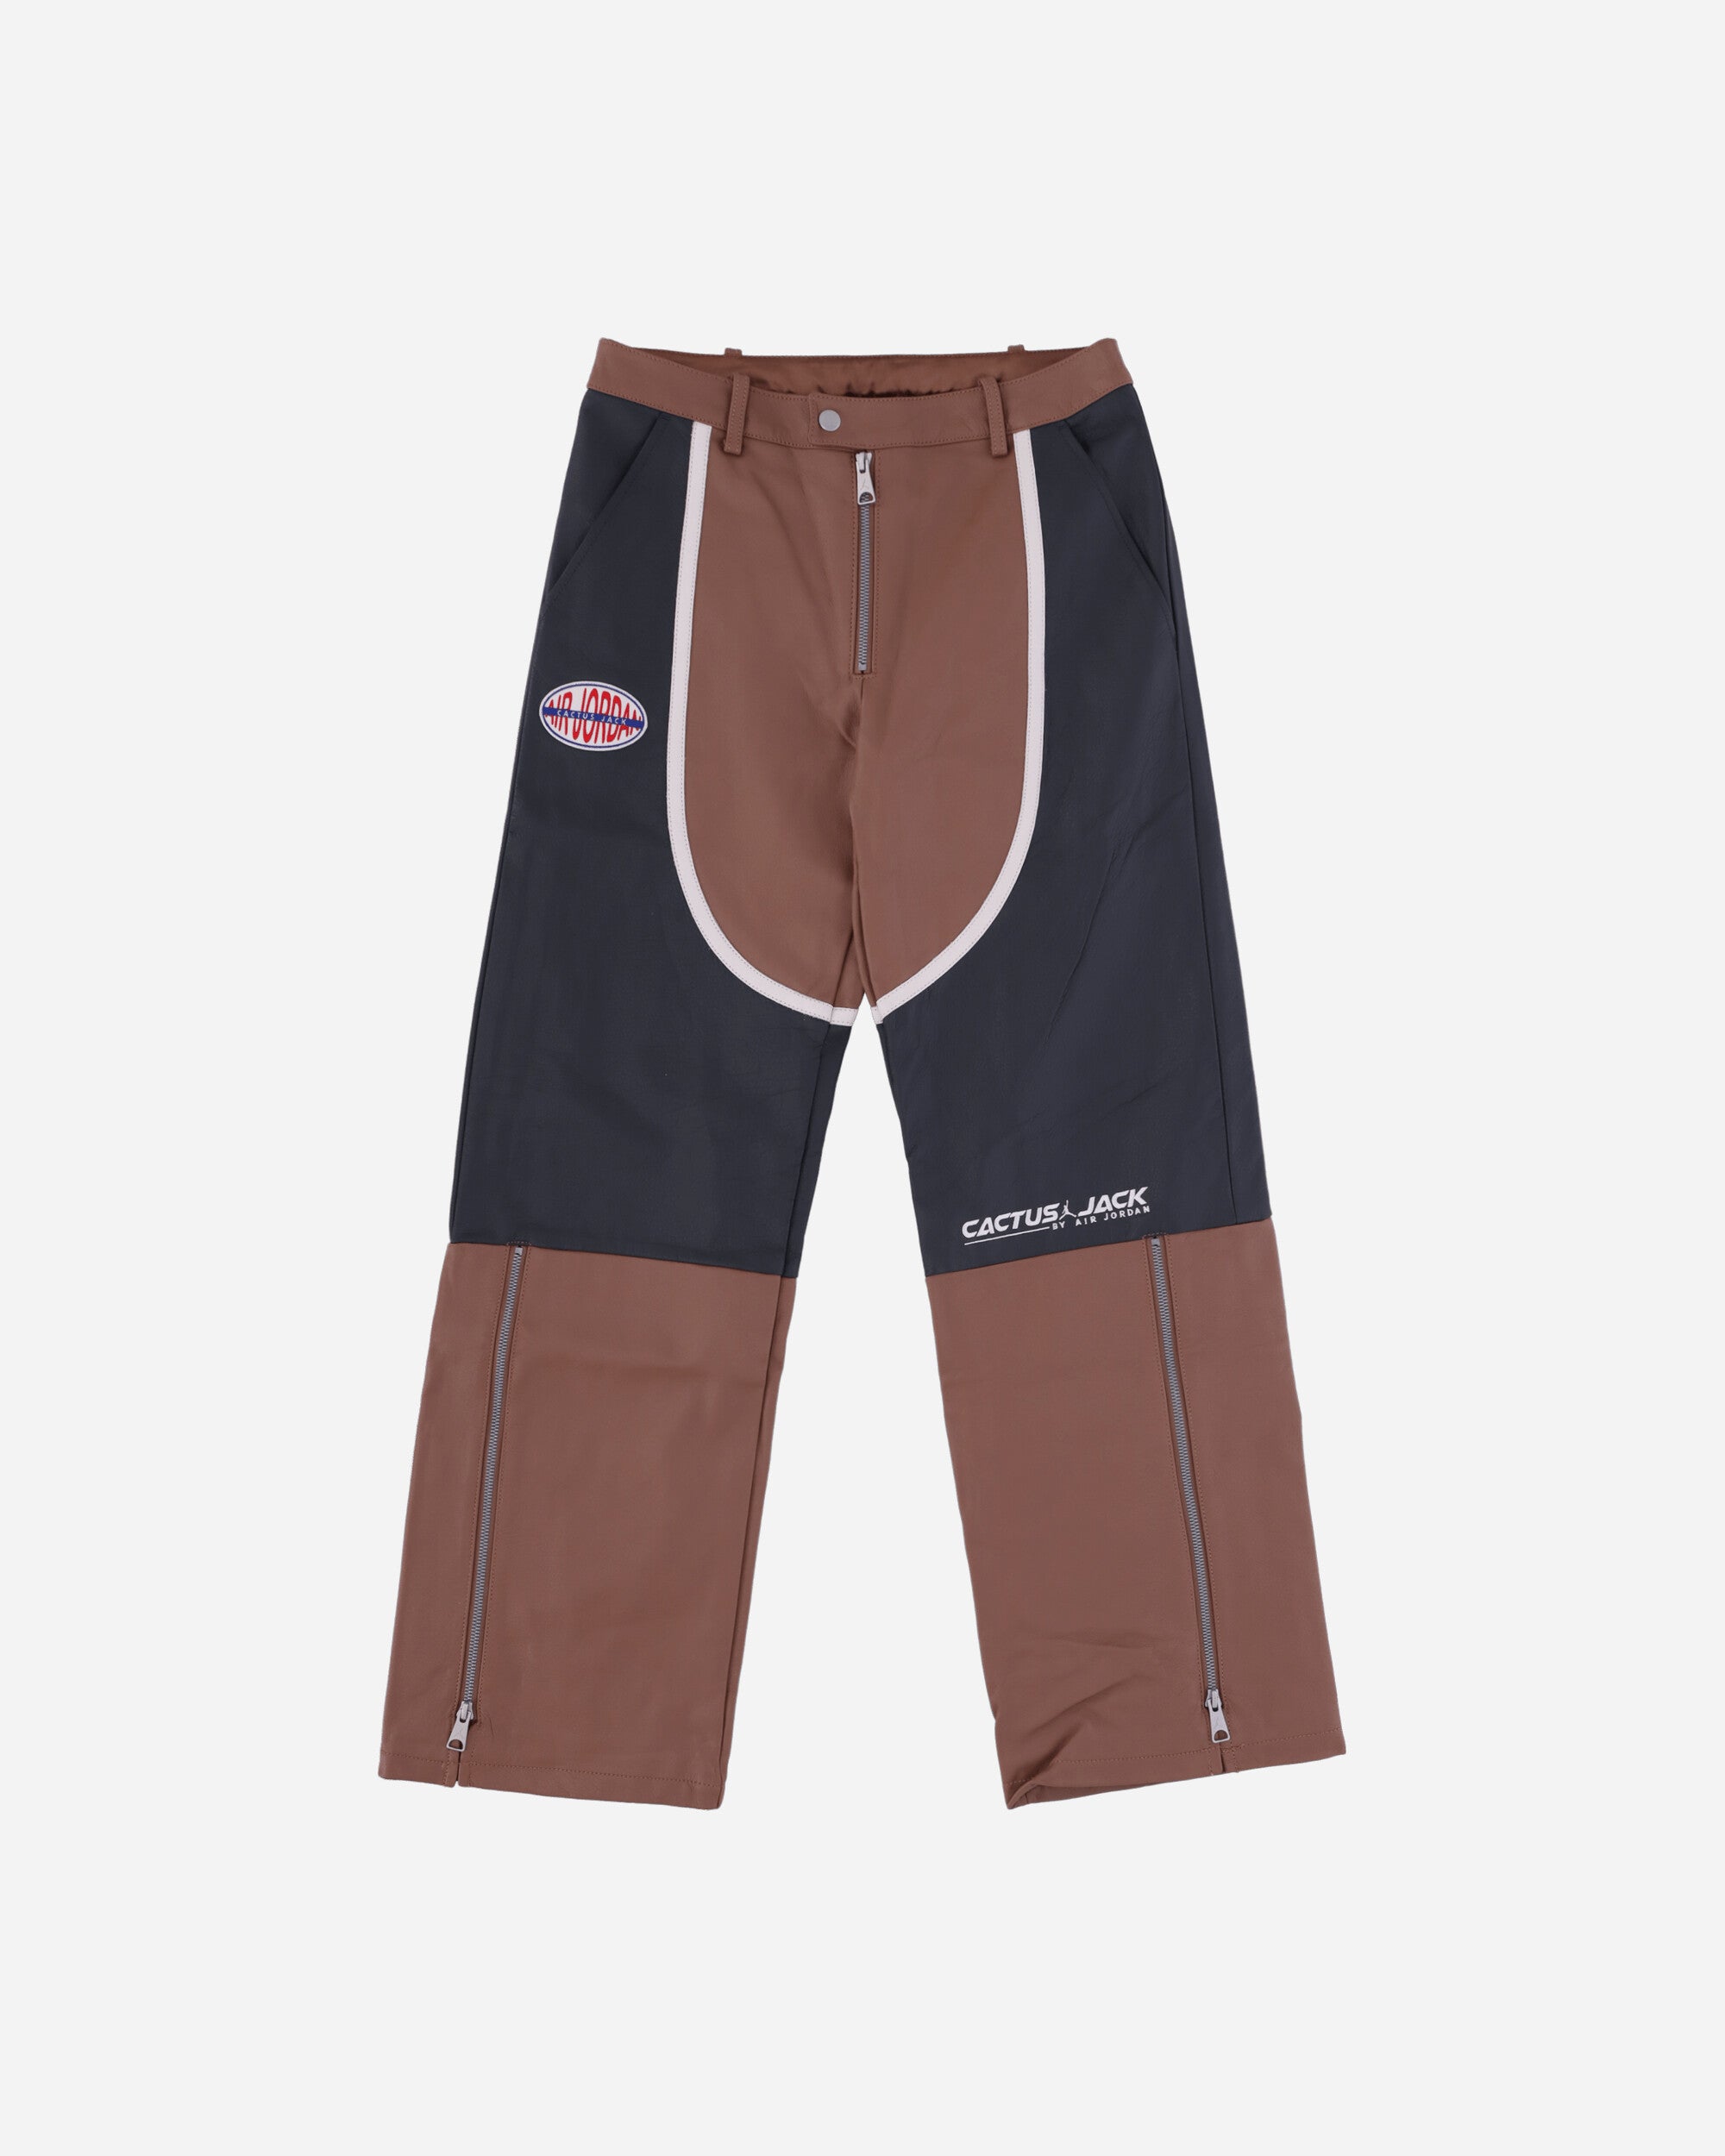 Nike Jordan Wmns Sp Ts Moto Pant Archaeo Brown/Dk Smoke Grey Pants Trousers DX8601-256